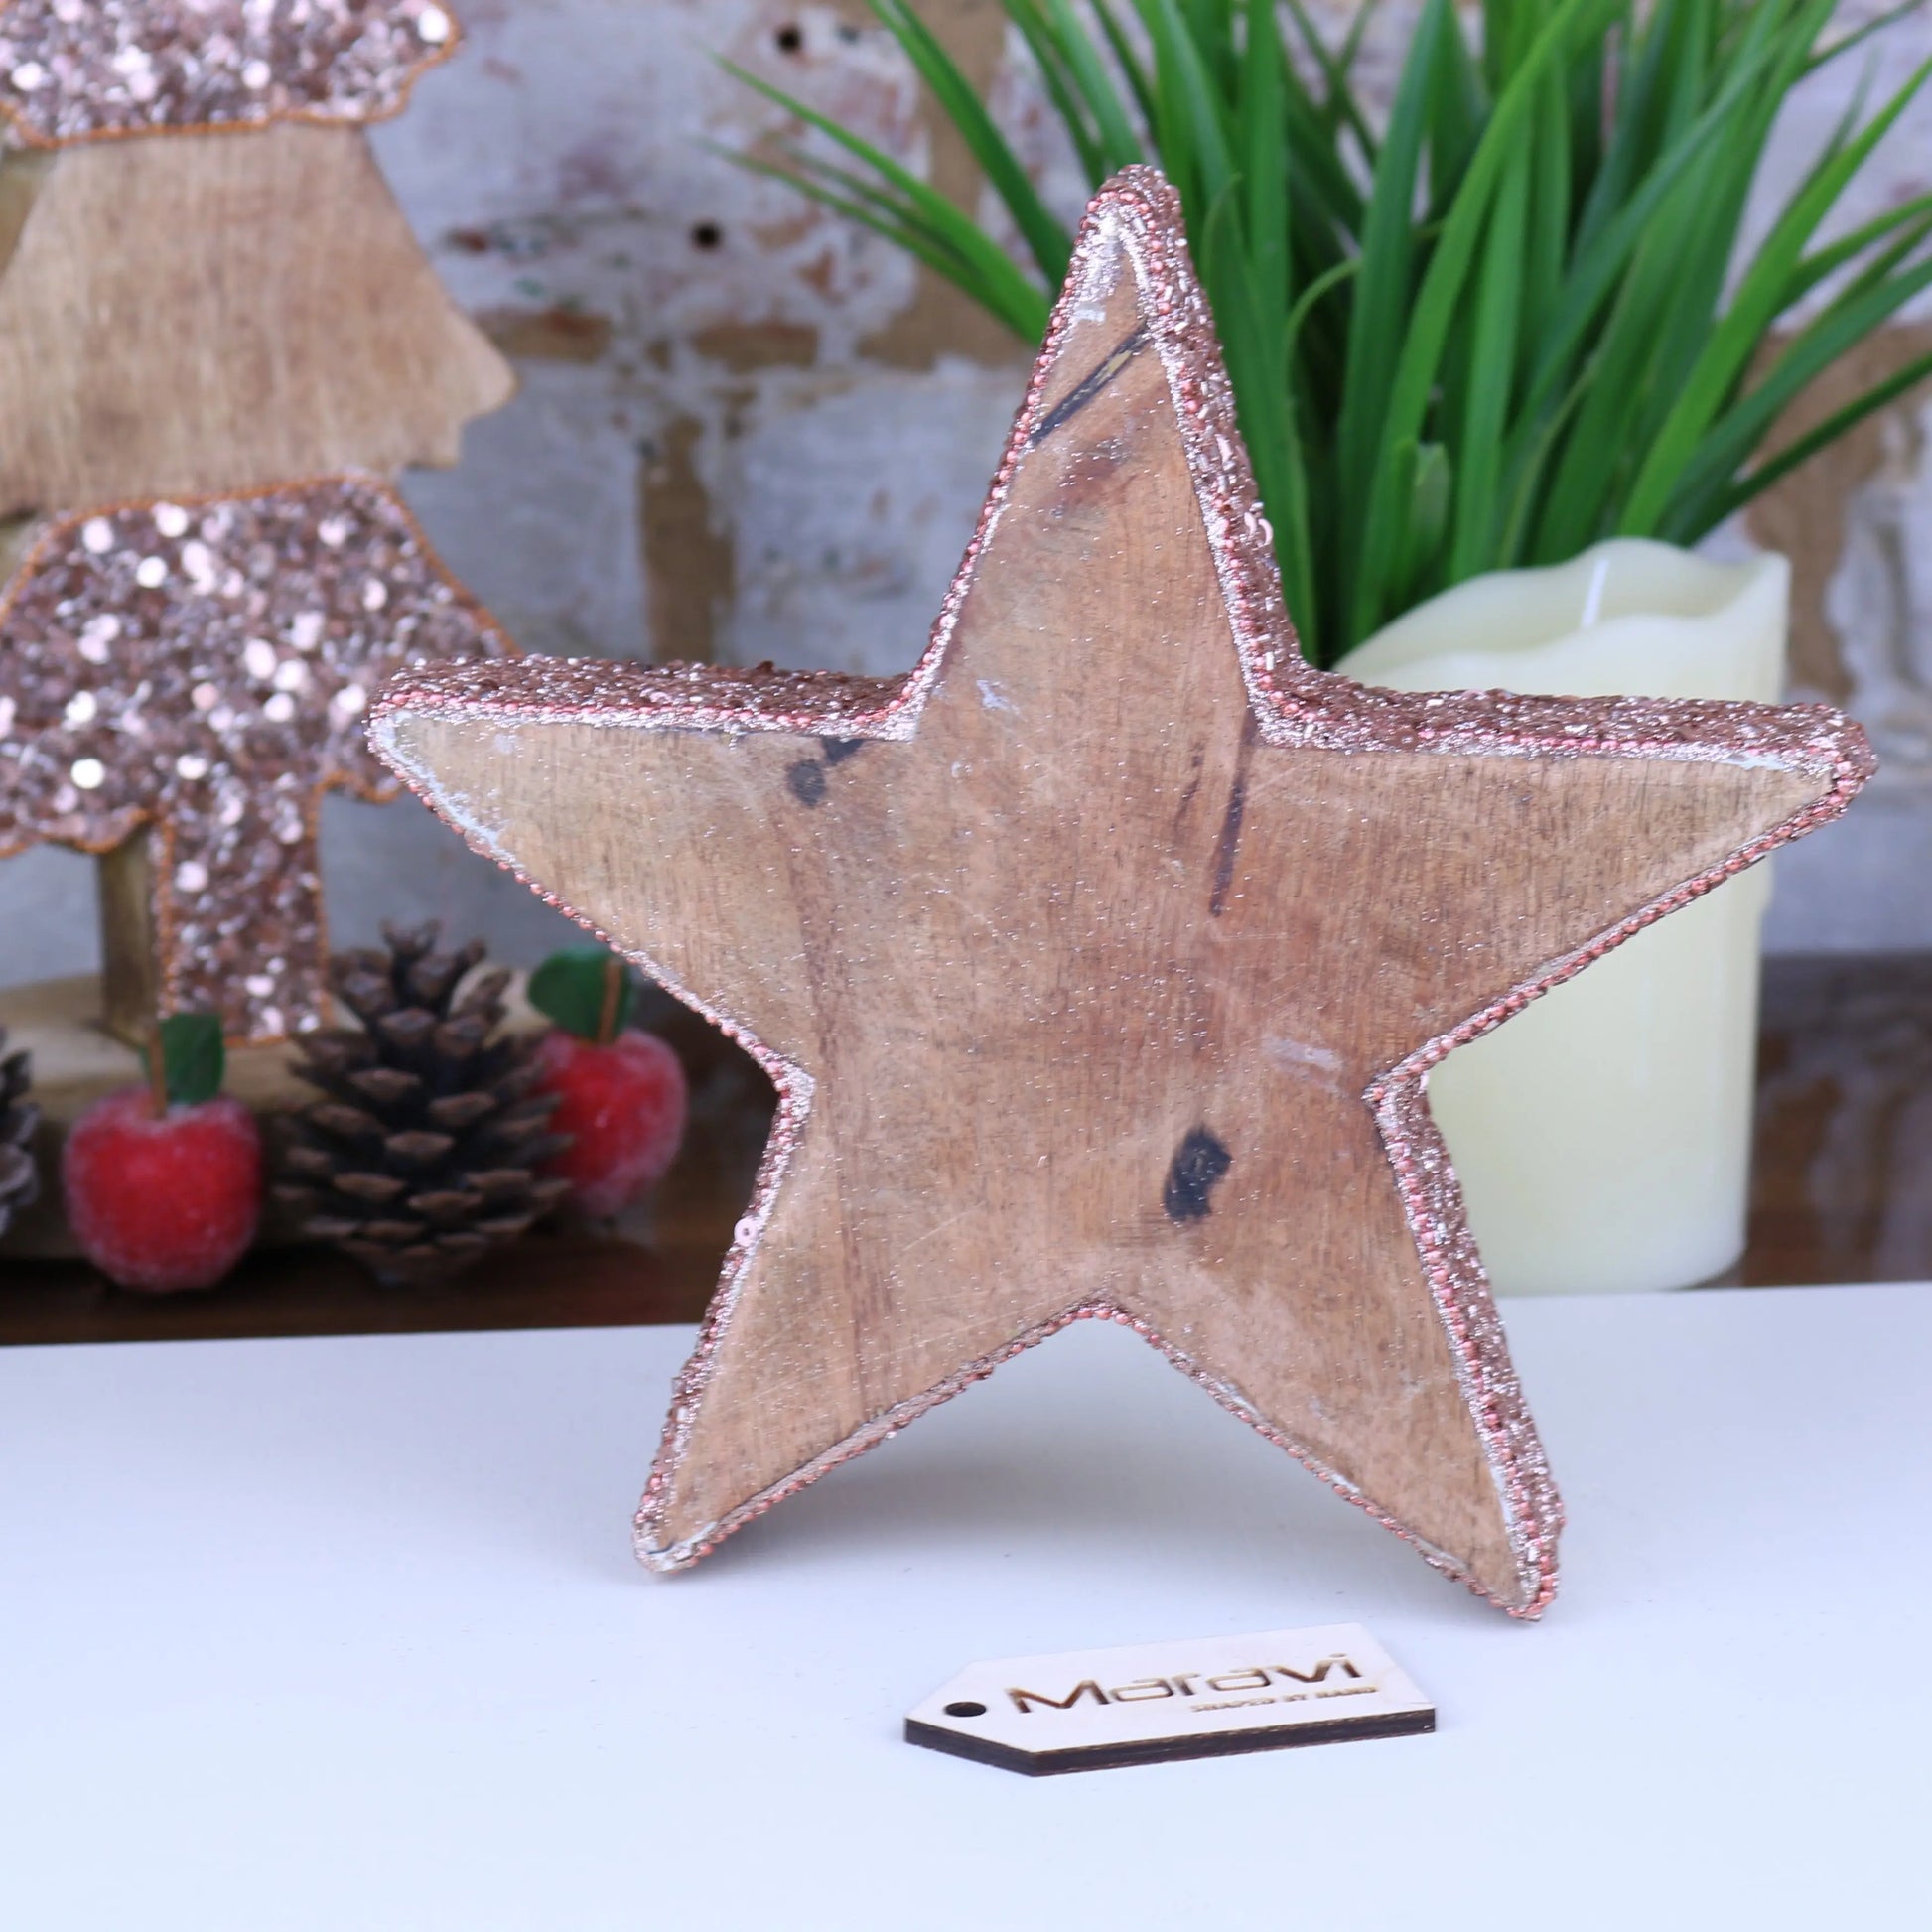 Lovell Decorative Board 20cm Star Copper Jewel Design Maravi